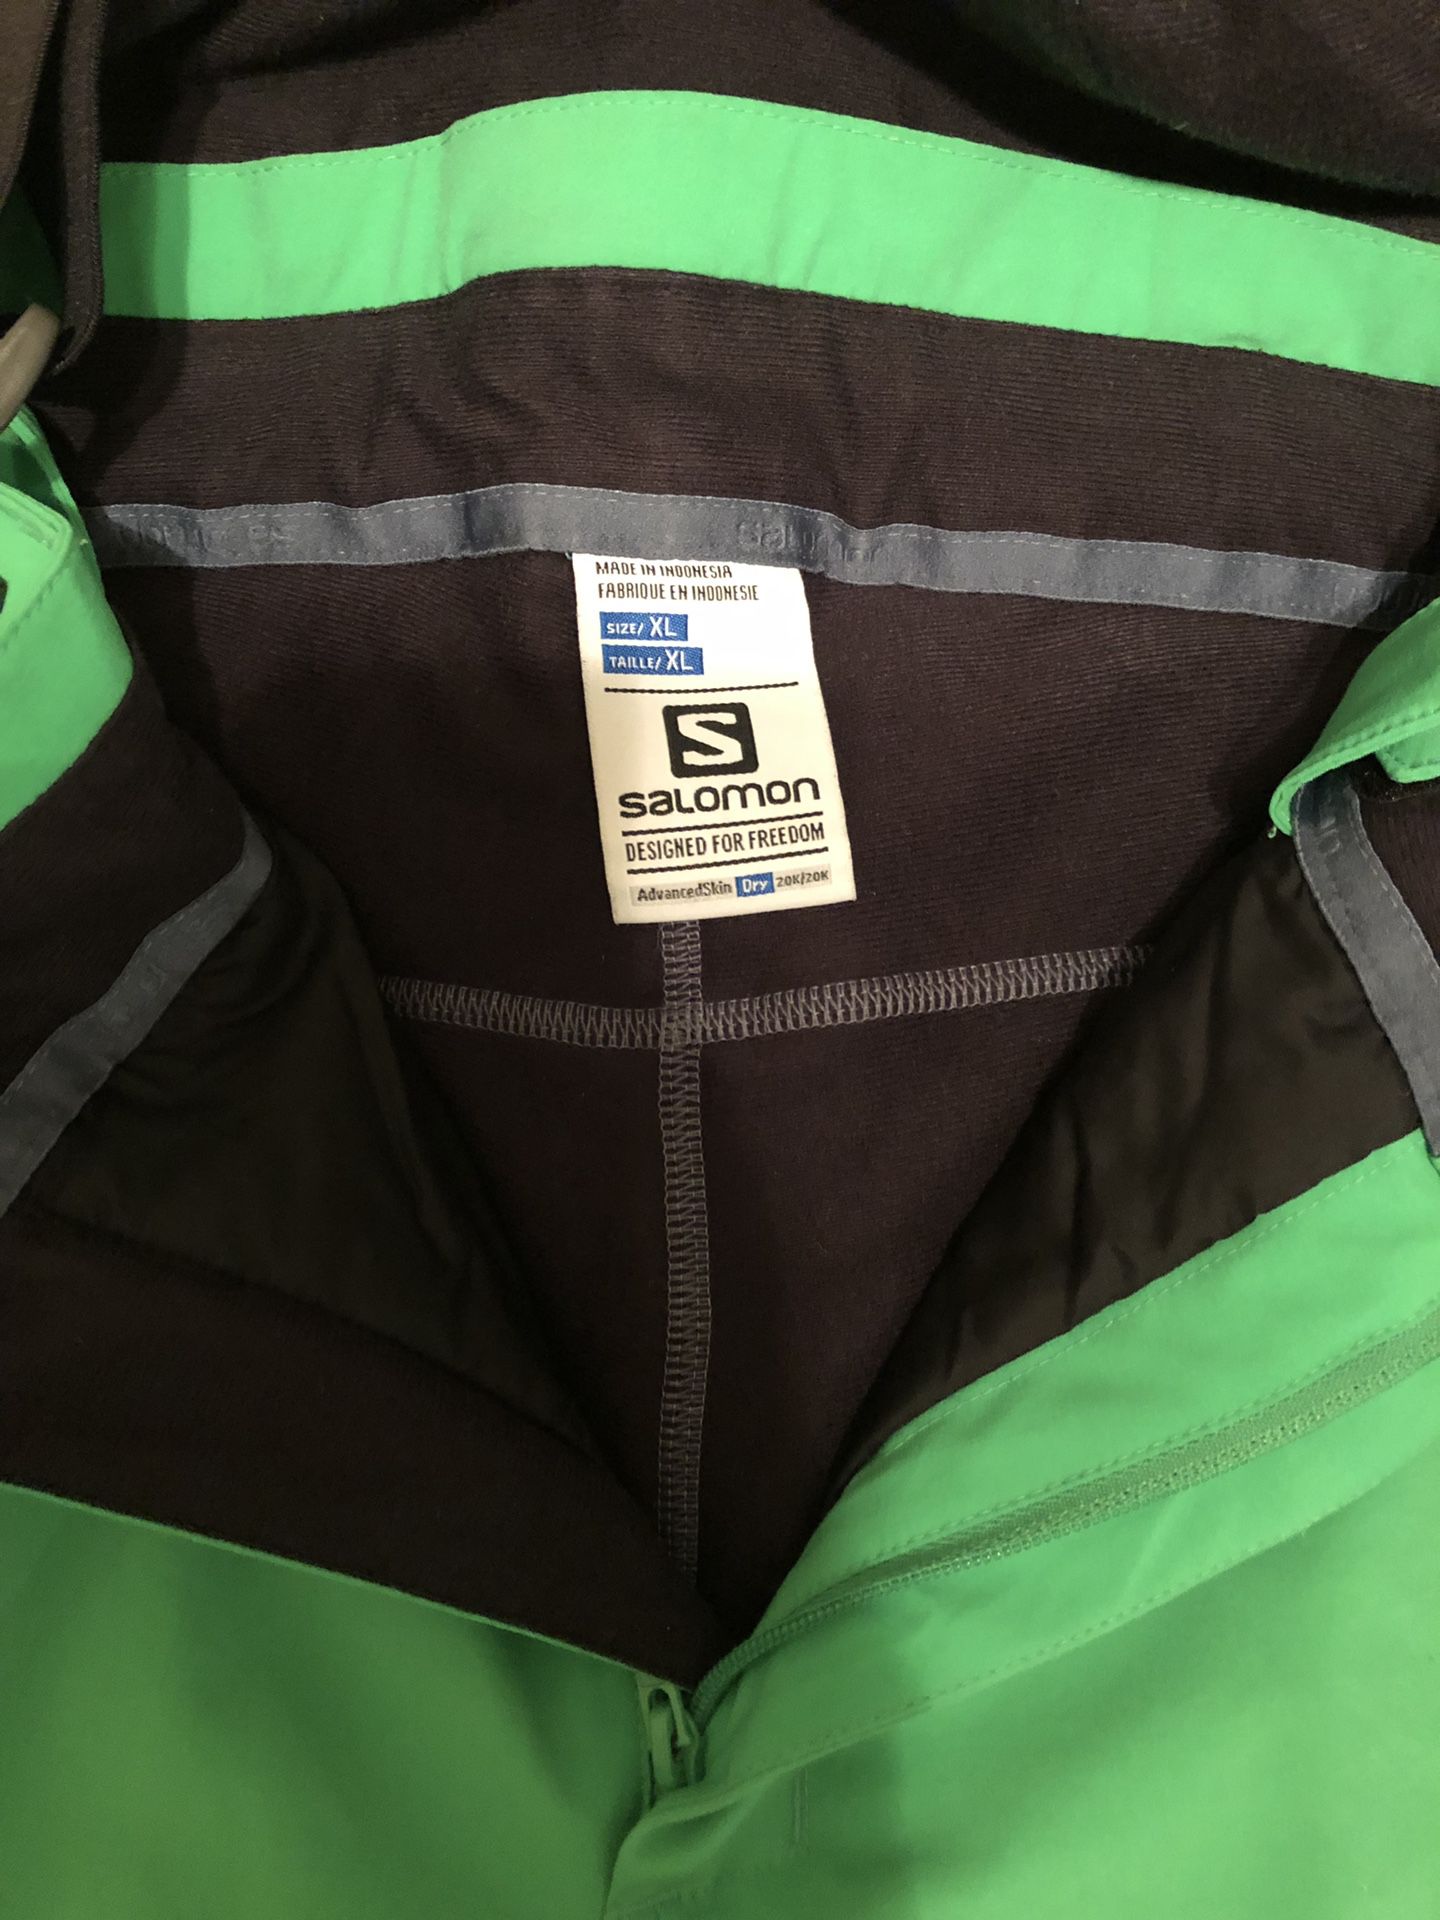 Salomon Ski Pant for Men in green- Like NEW